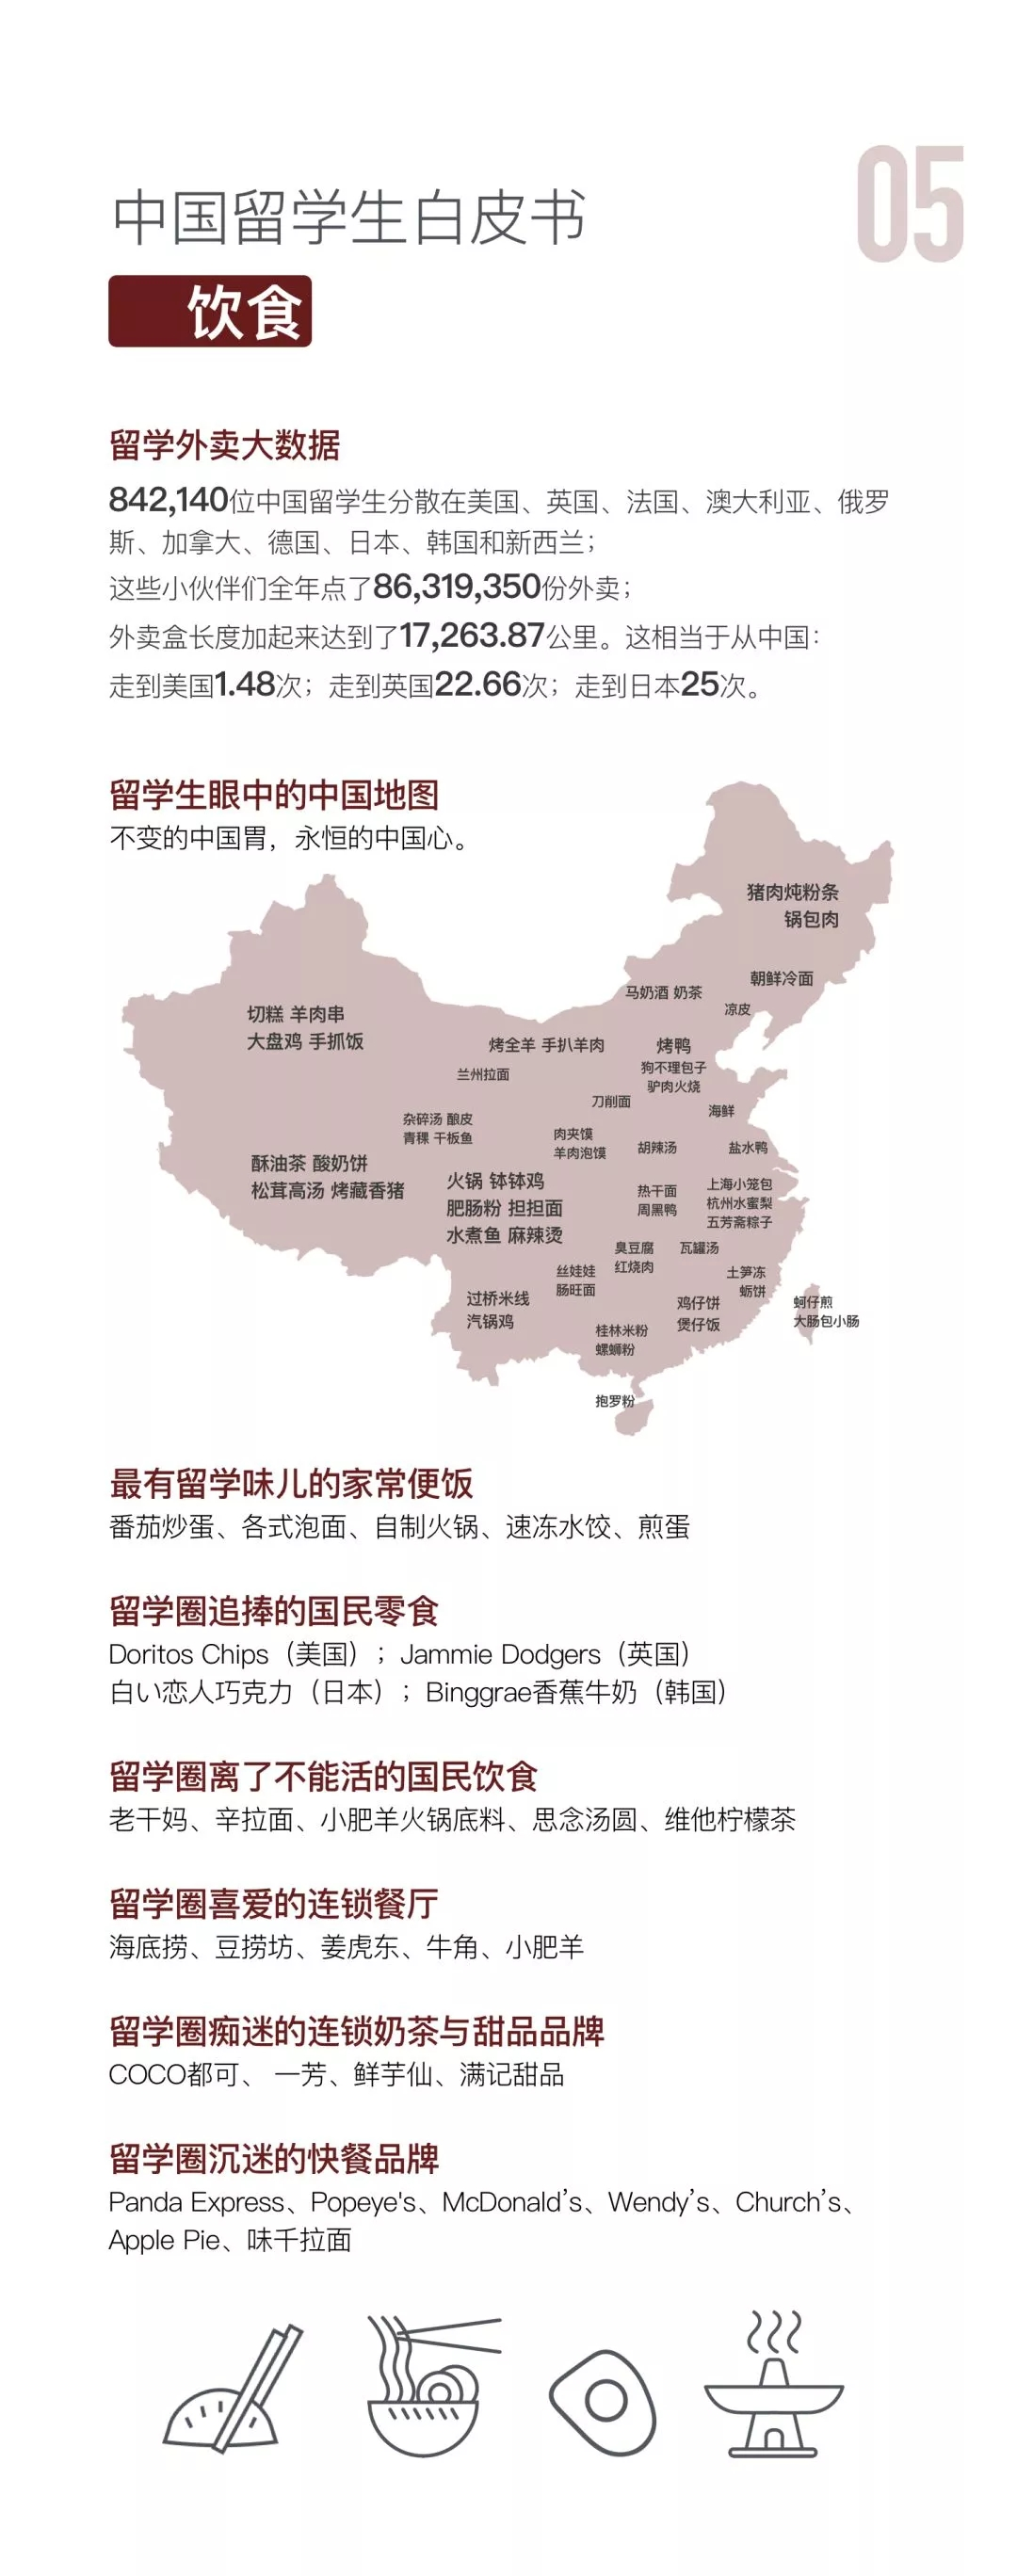 中国留学生白皮书饮食情况数据发布